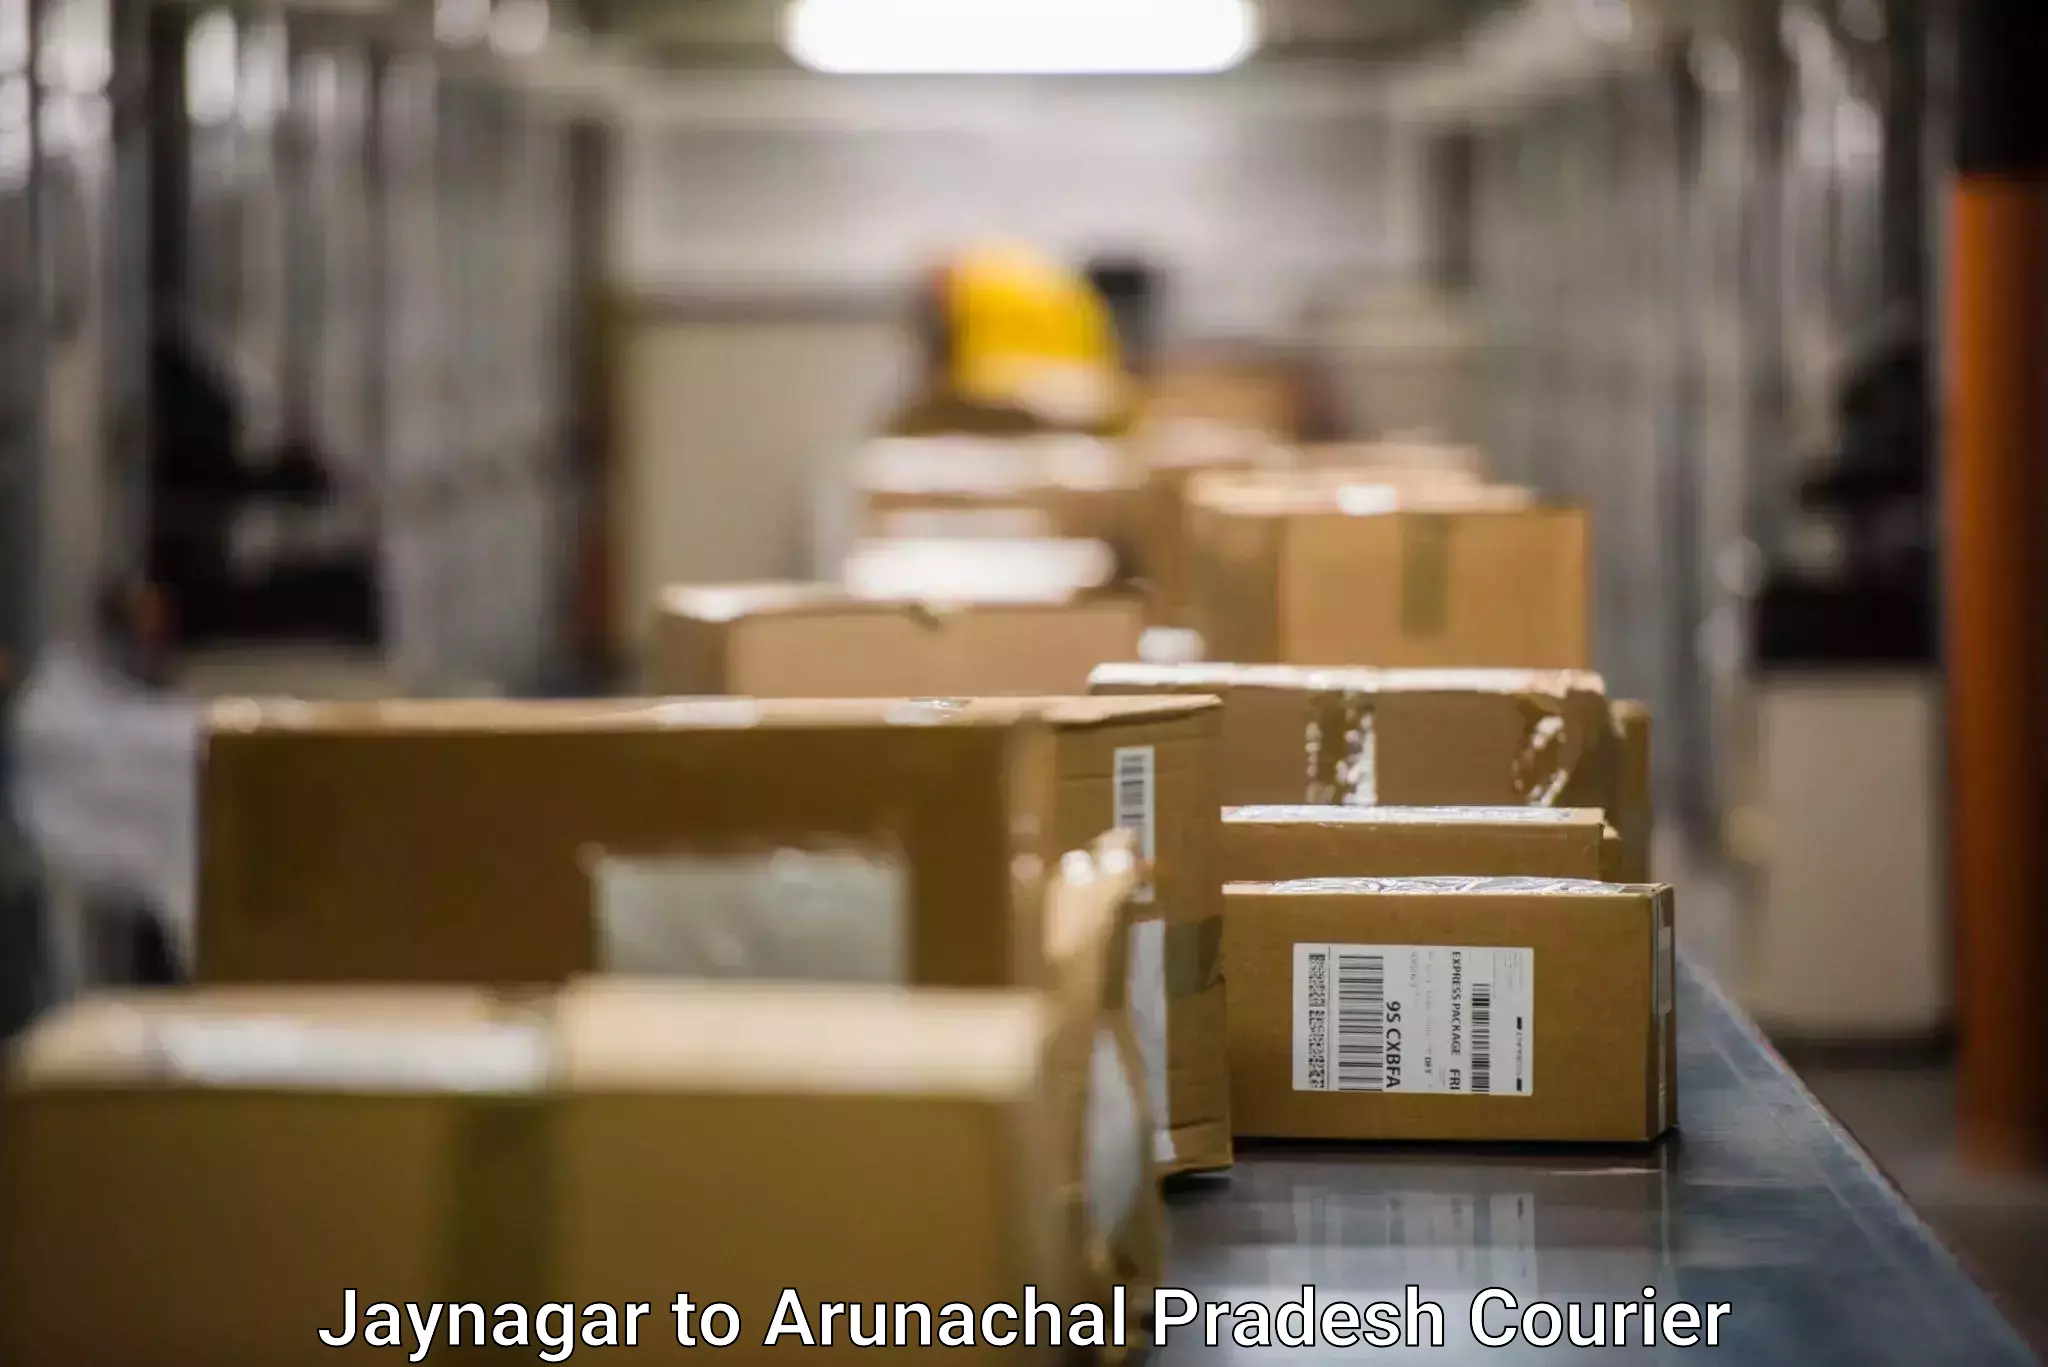 Pharmaceutical courier Jaynagar to Khonsa